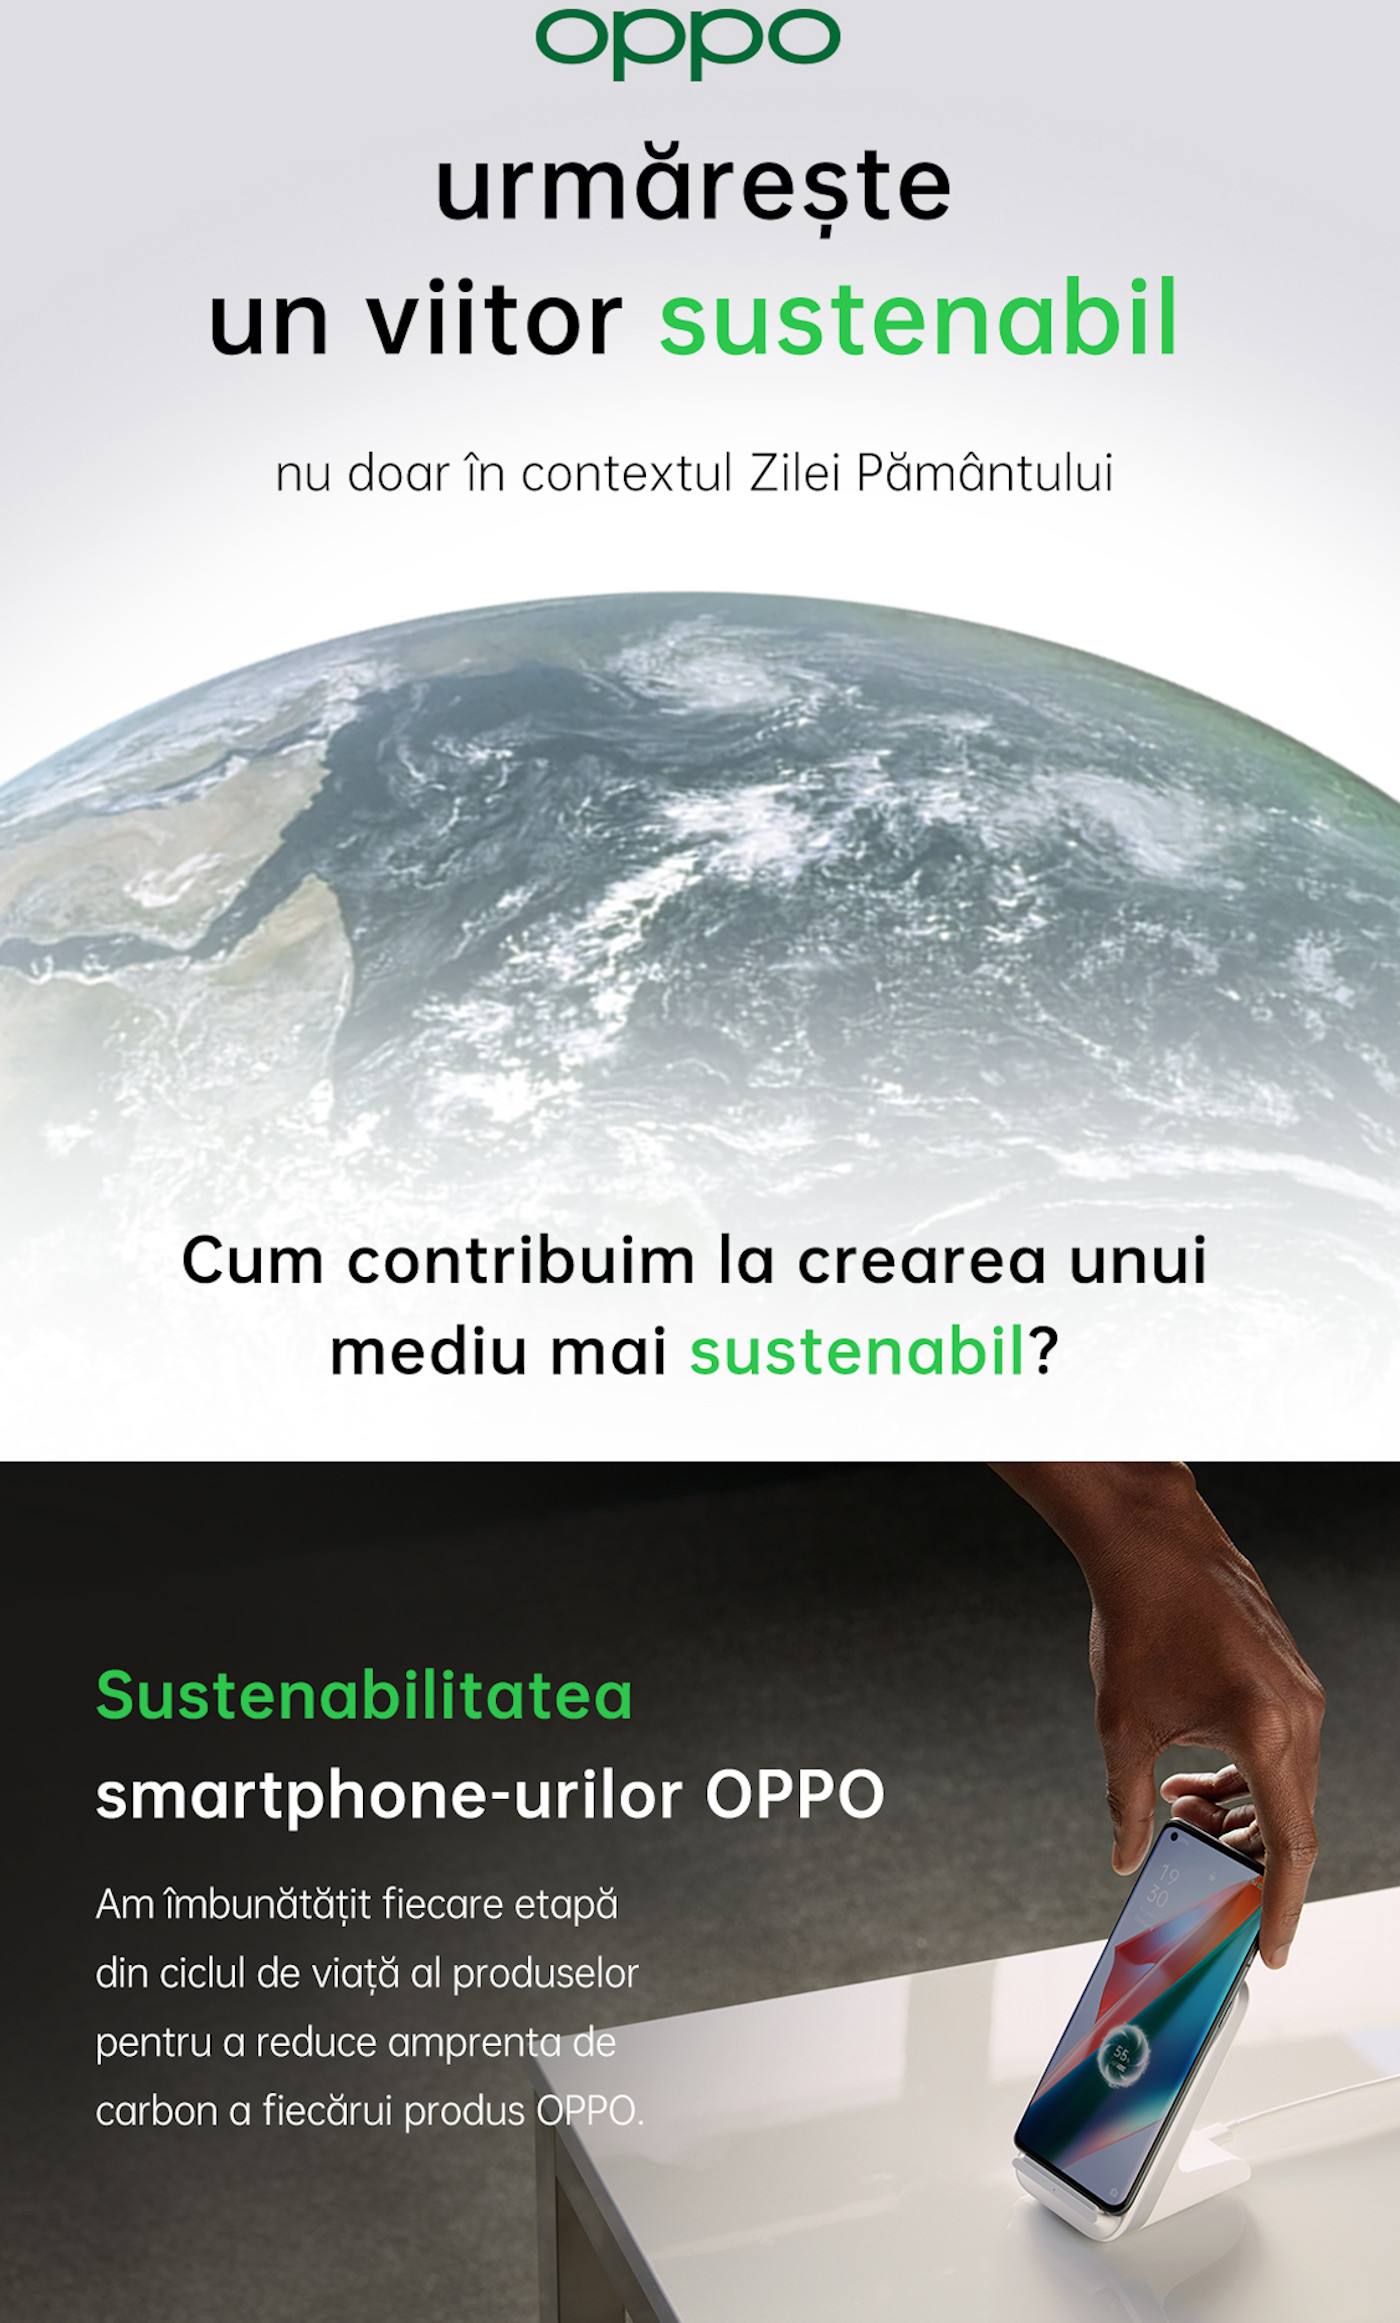 OPPO contribuie la crearea unui ecosistem sustenabil